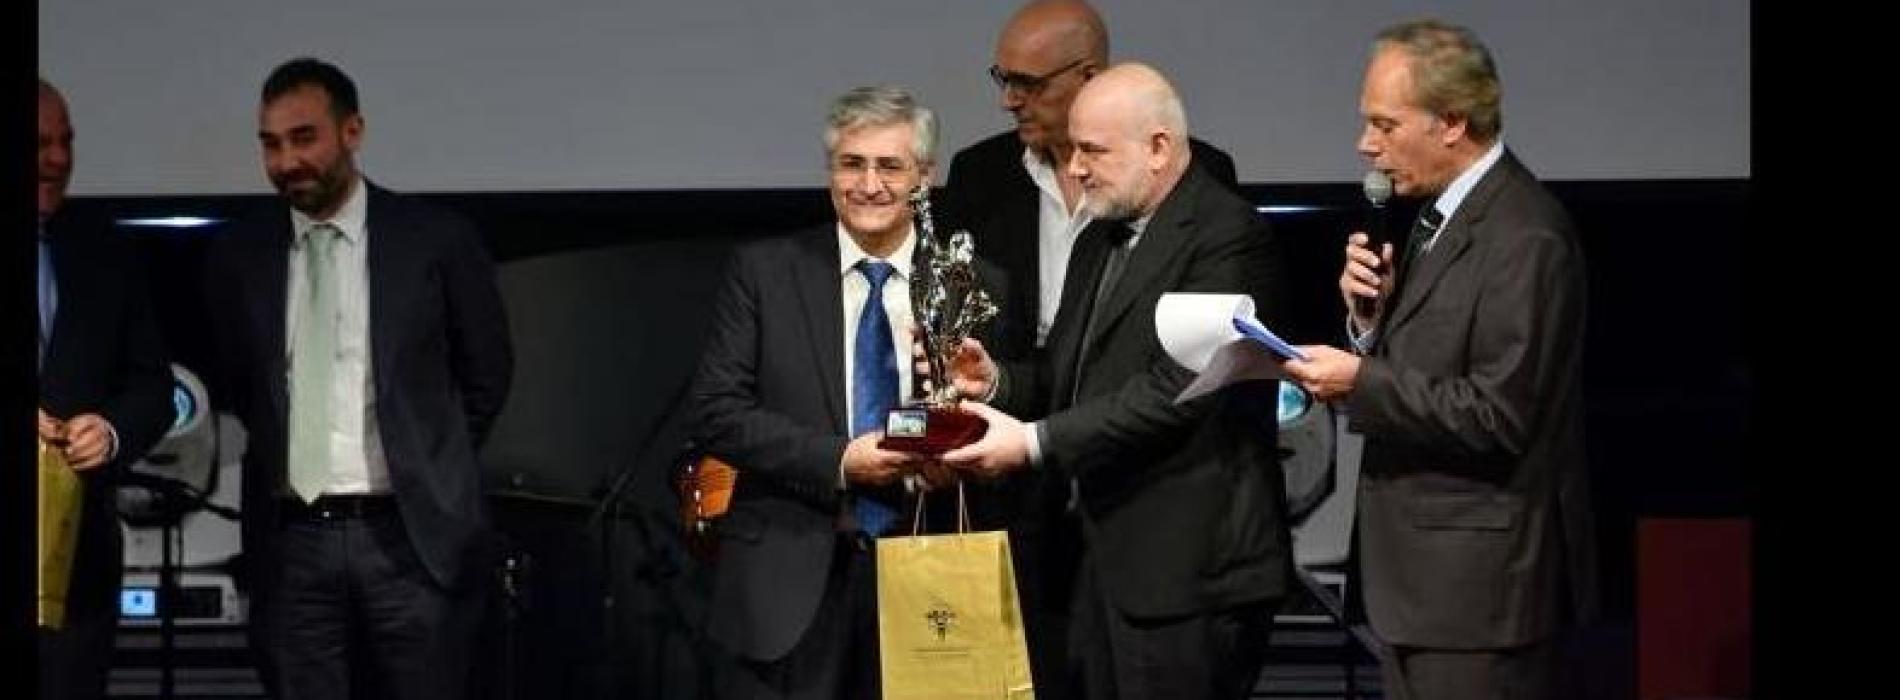 Marcellino Monda, a lui il premio Buona Sanità 2019